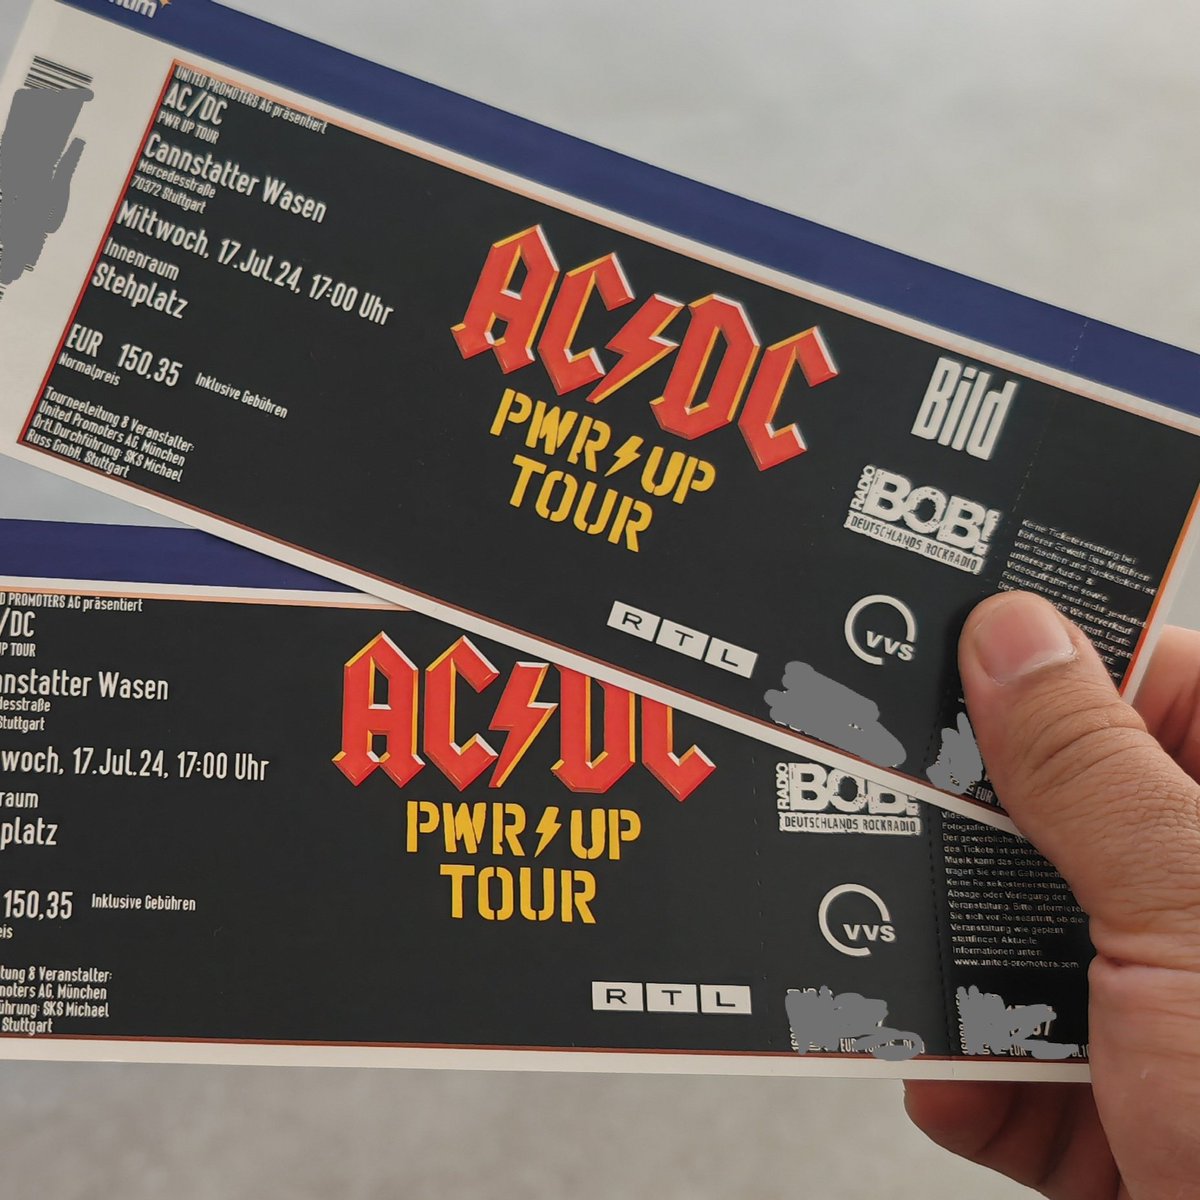 Rock on! 🤟🏽 Ich habe noch Tickets übrig für die ACDC Konzerte auf dem Cannstatter Wasen (17.07.) und in Hockenheim (13.07.)! 🎸 Wer noch welche braucht, schreib mir einfach! 🥁 Lets Rock #ACDC #RocknRoll #KonzertTickets